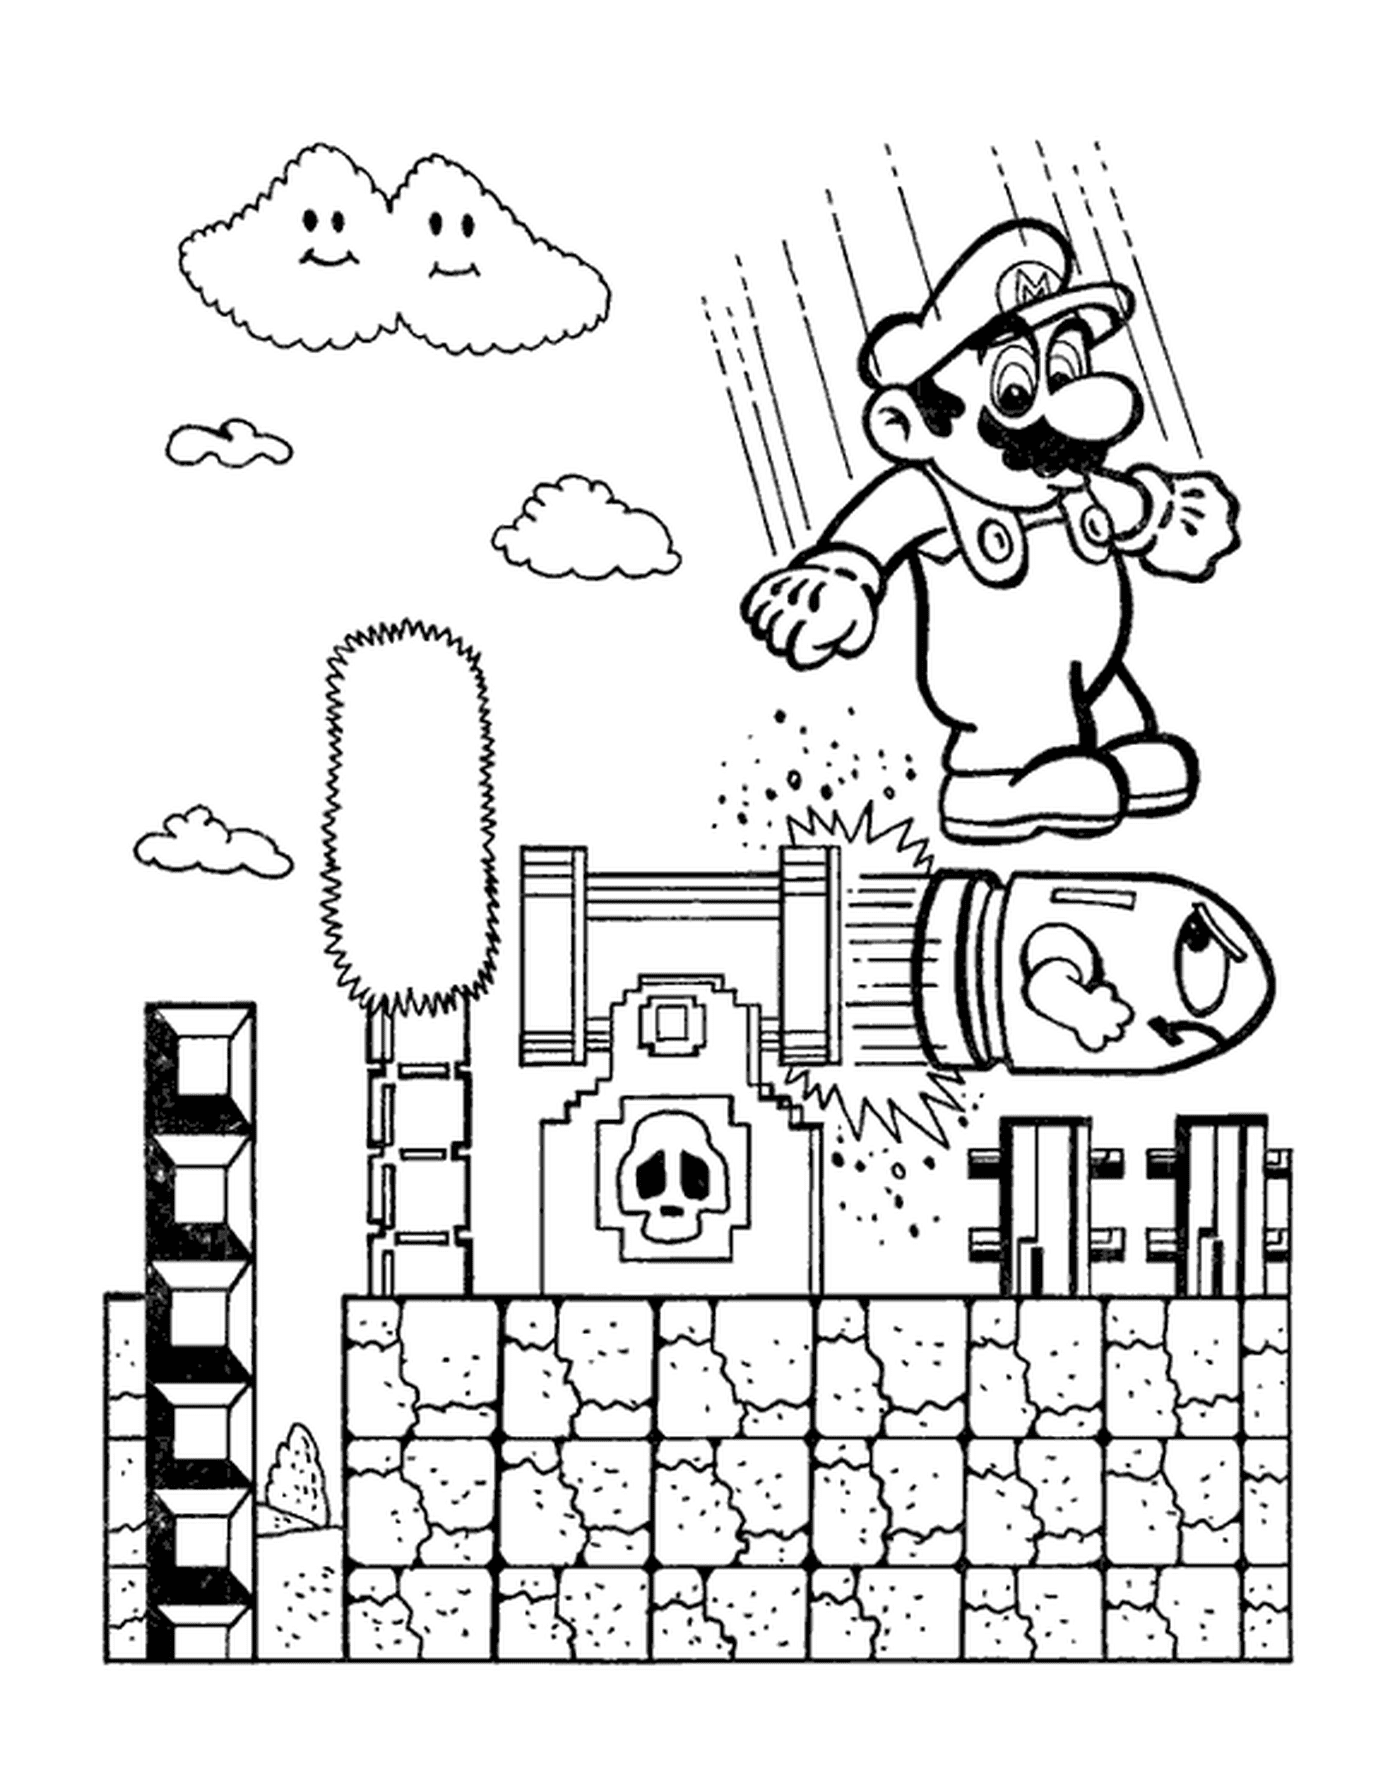  Mario salta sobre una bomba peligrosa 